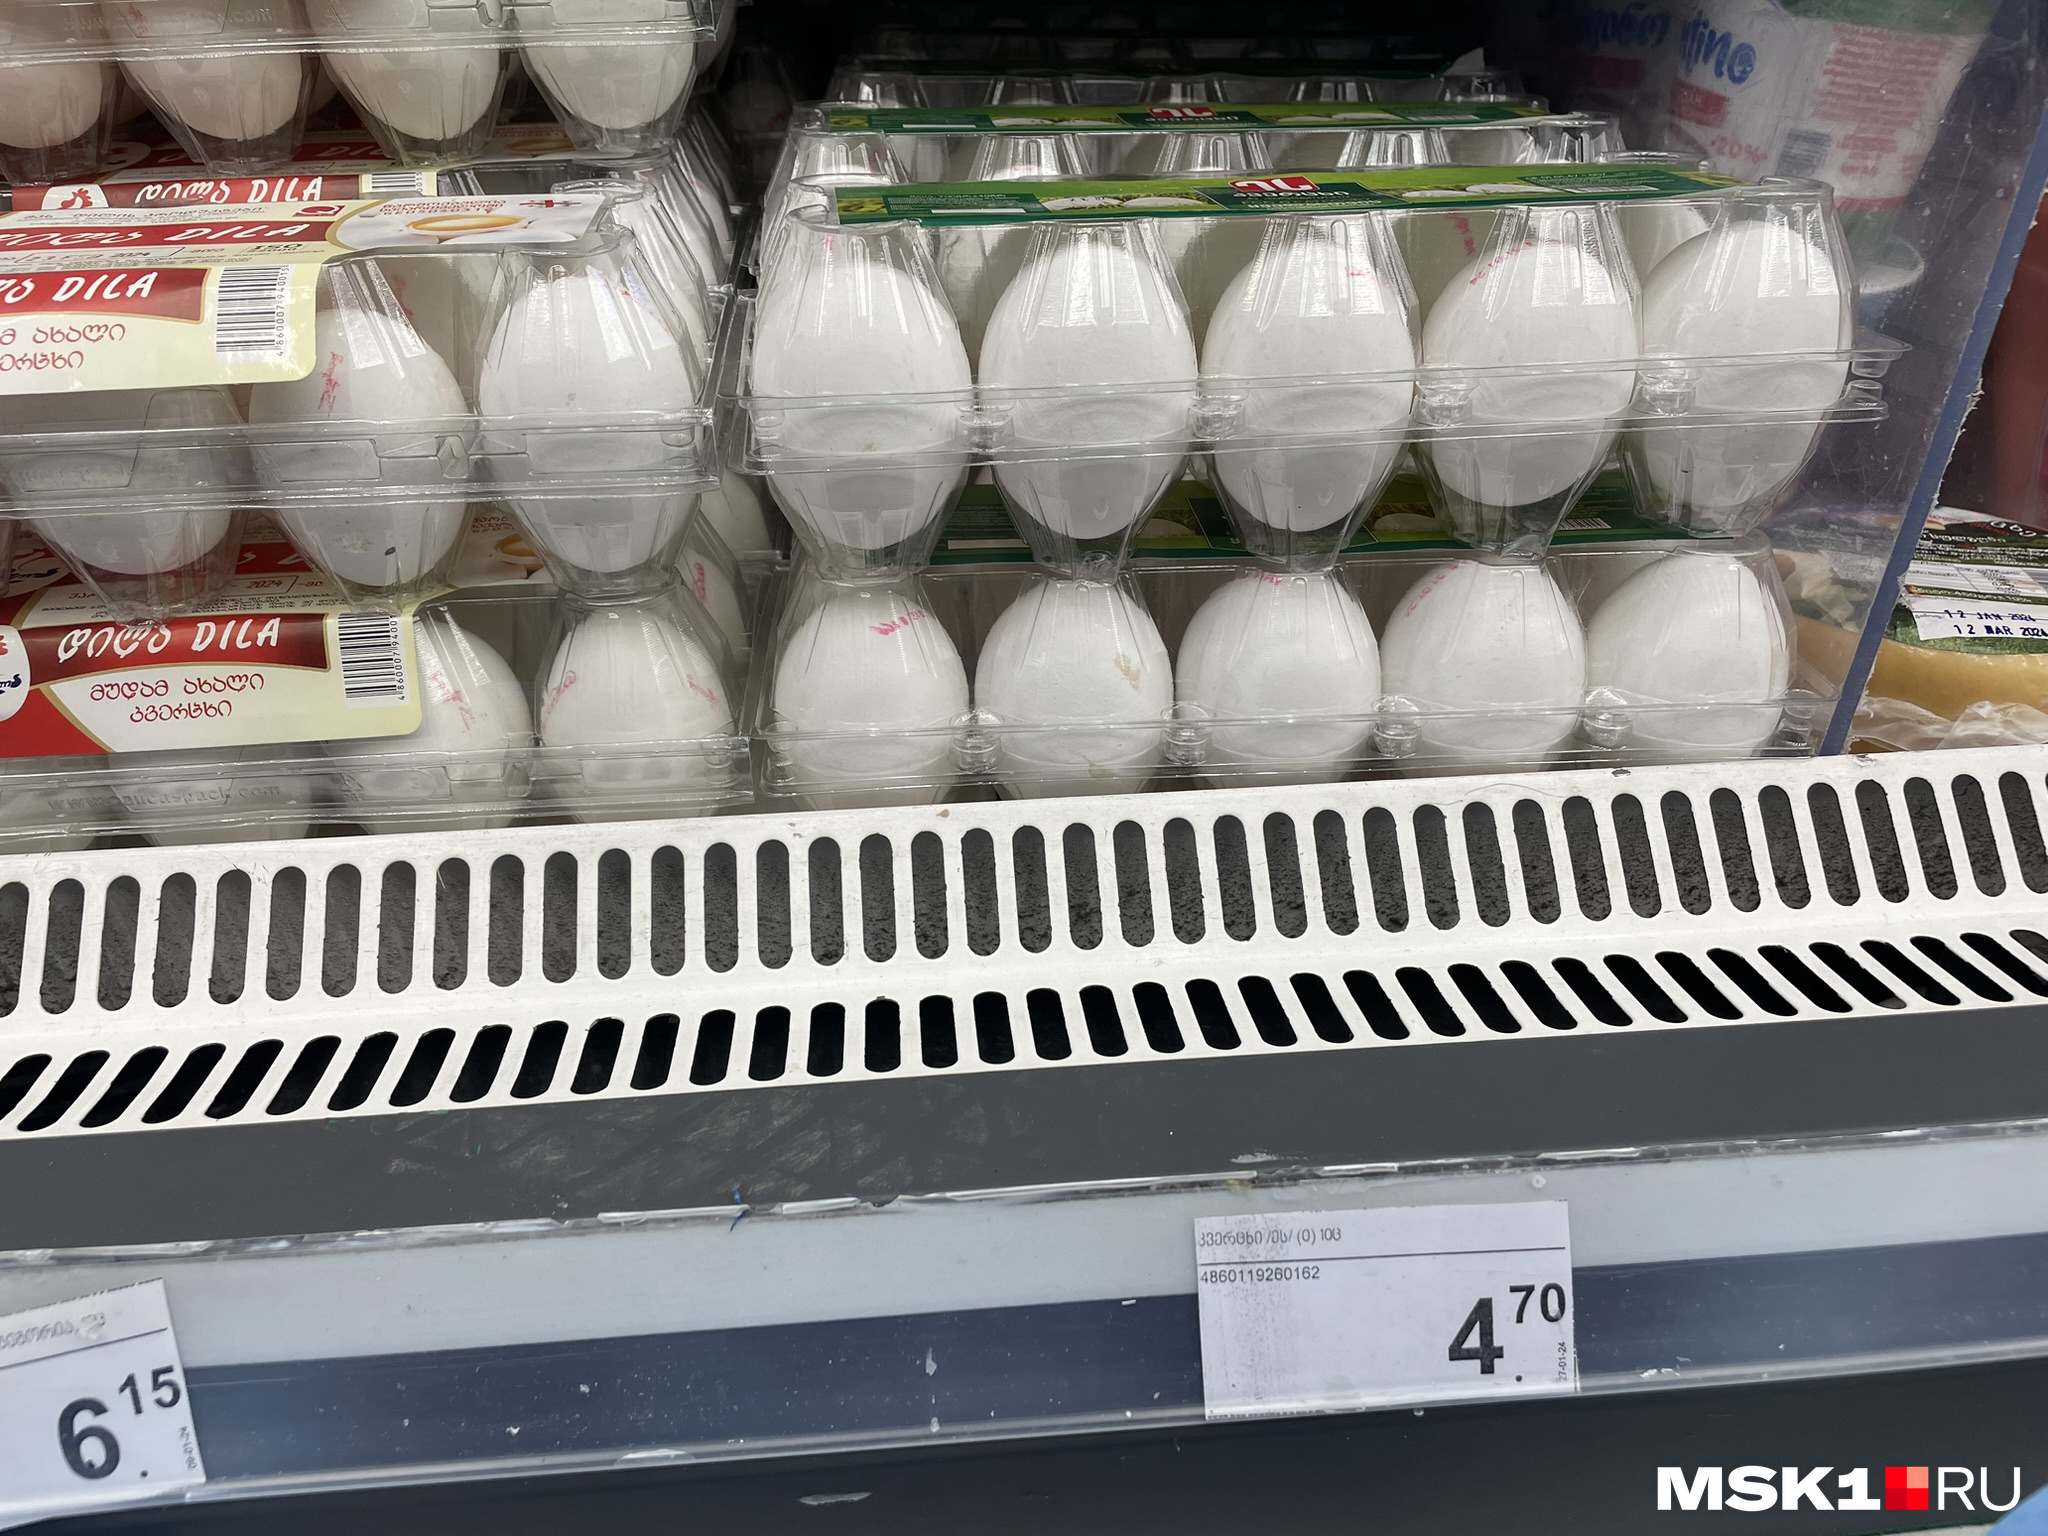 Самые дешевые яйца в Тбилиси стоят почти 165 рублей за десяток